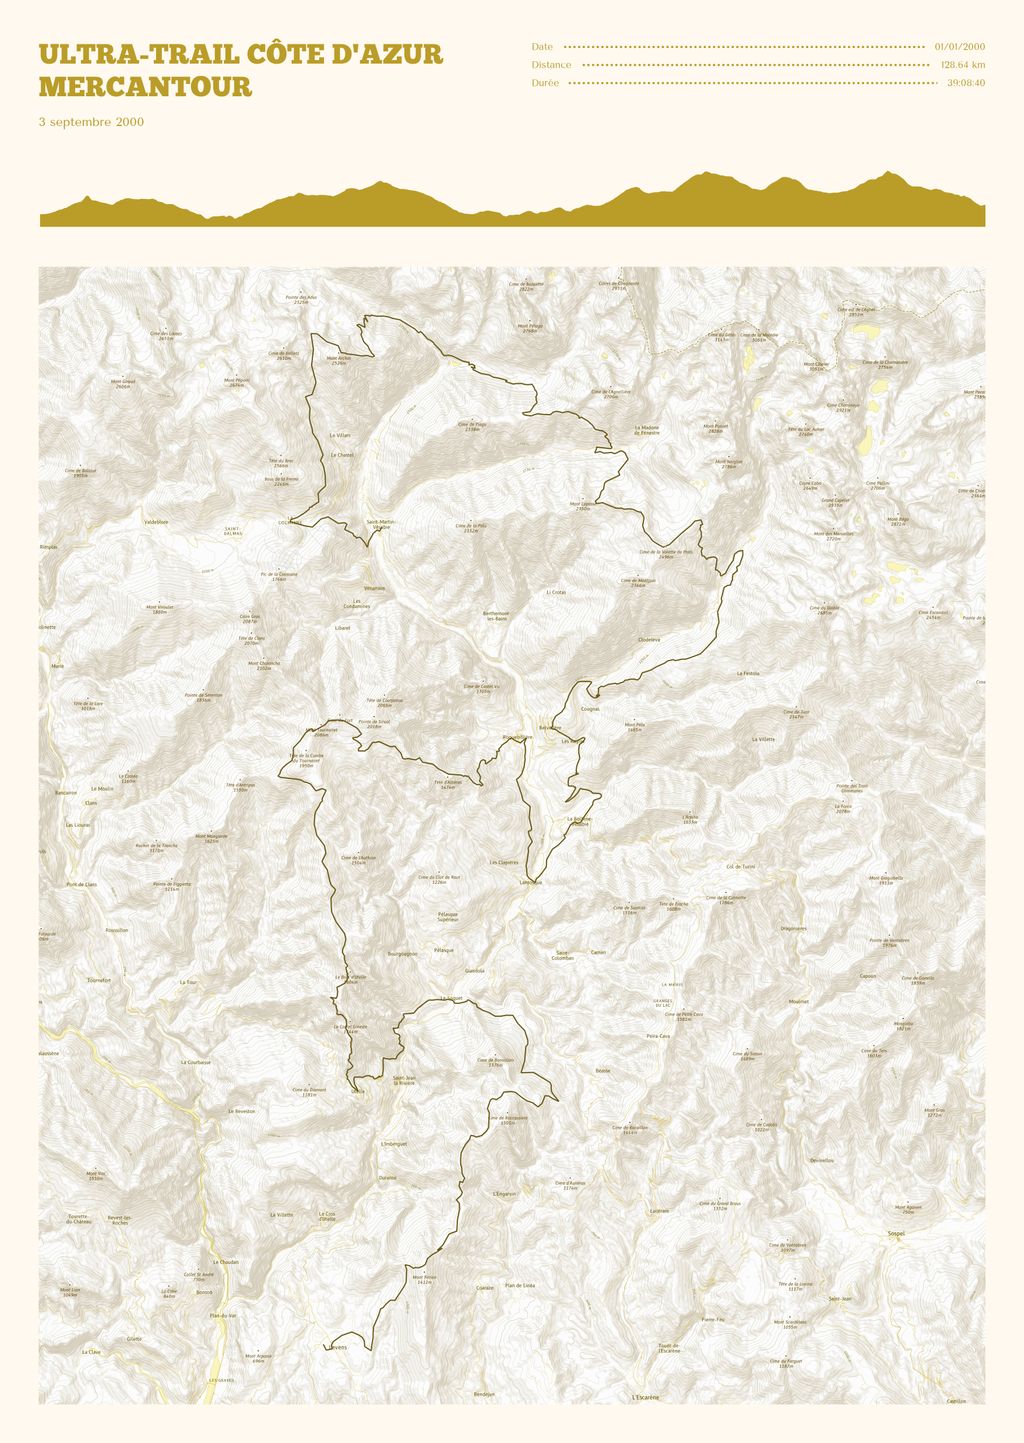 Poster cartographique du Ultra-Trail Côte d'Azur Mercantour